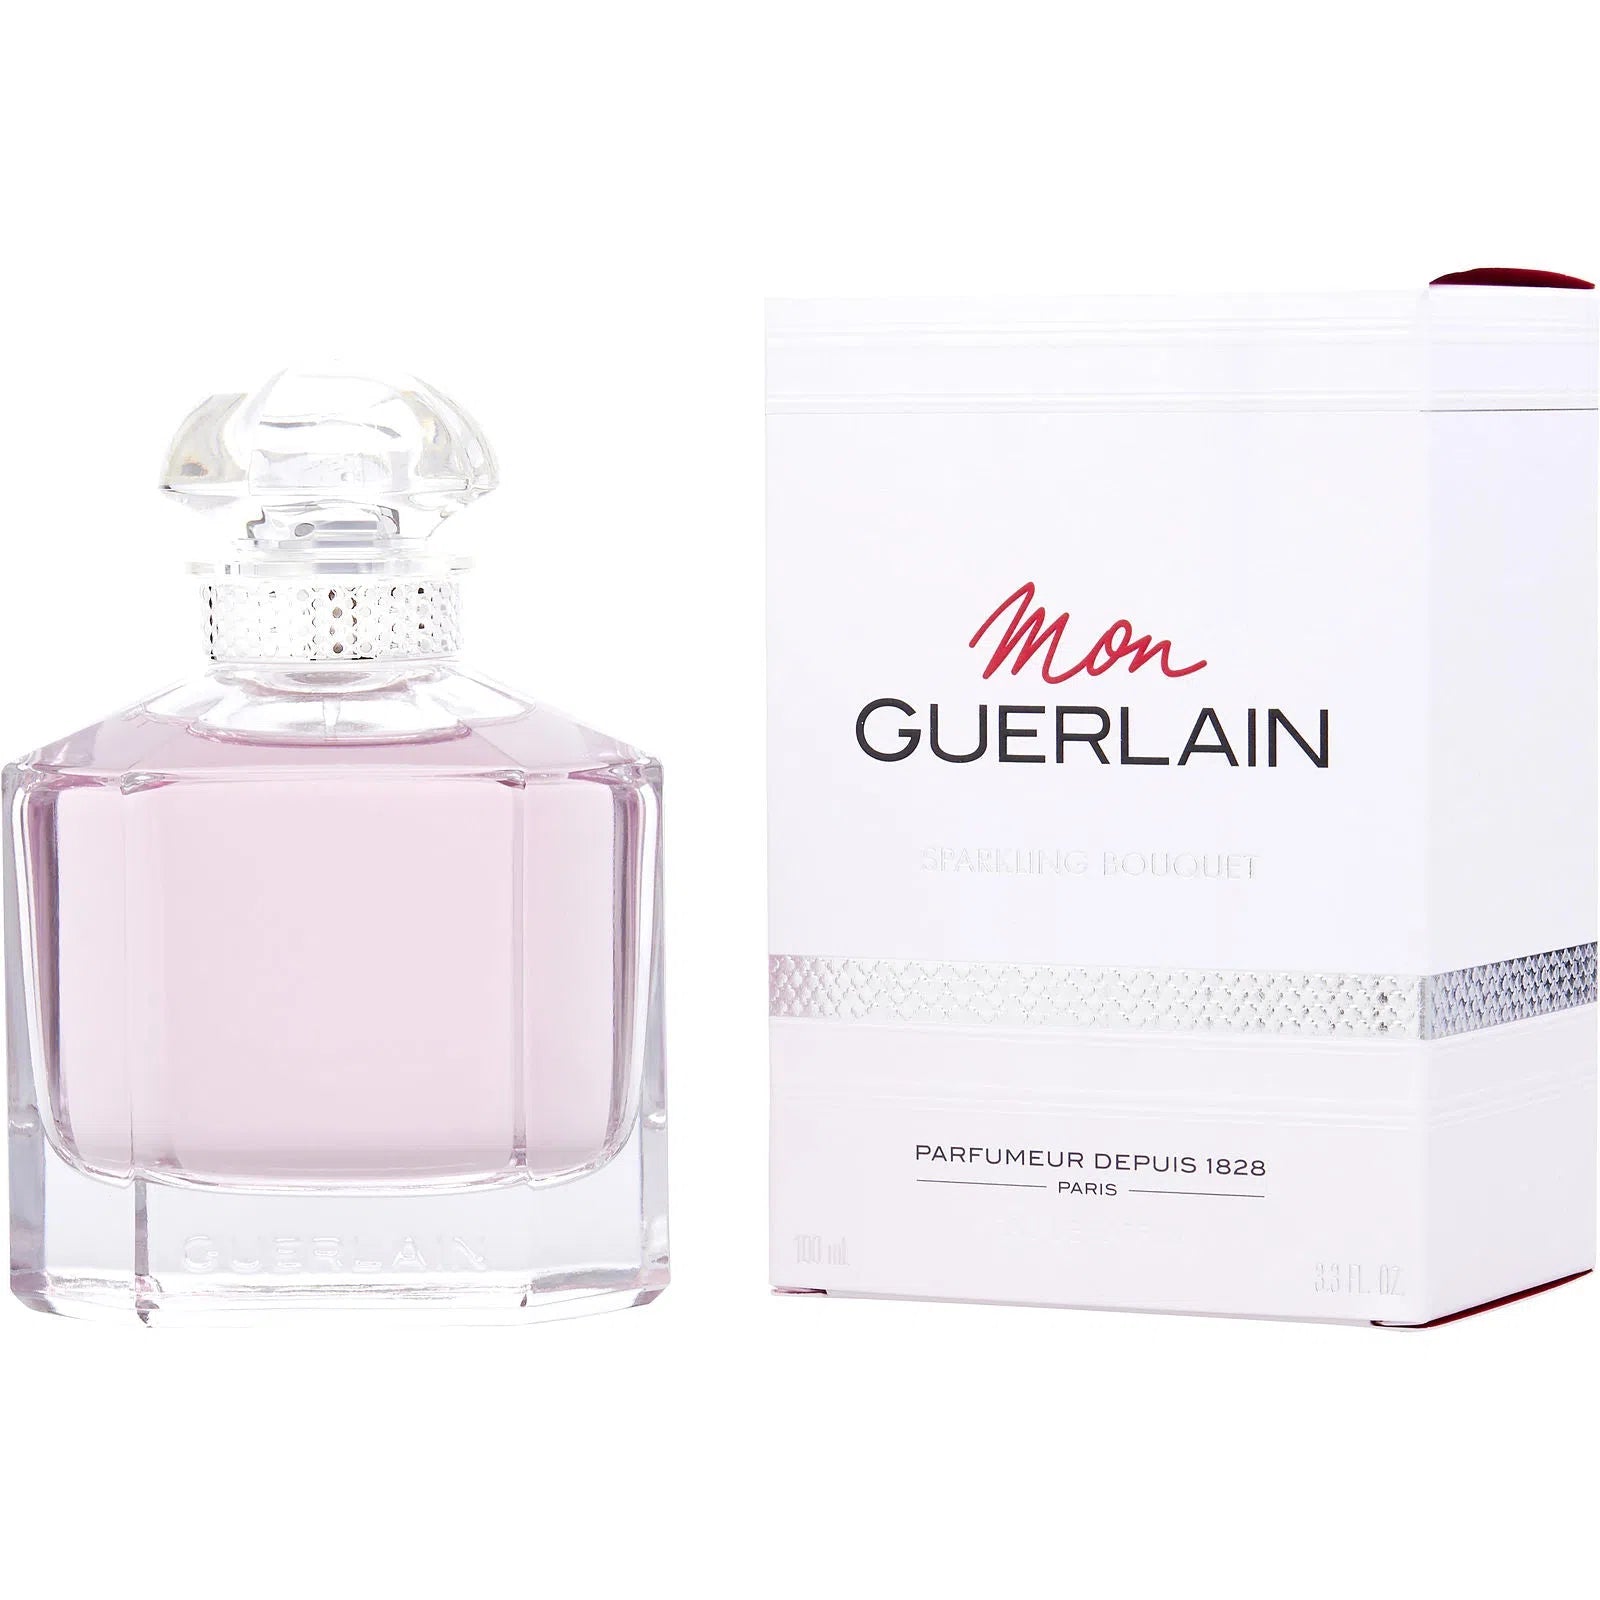 Perfume Guerlain Mon Guerlain Sparkling Bouquet EDP (W) / 100 ml - 3346470142473- Prive Perfumes Honduras